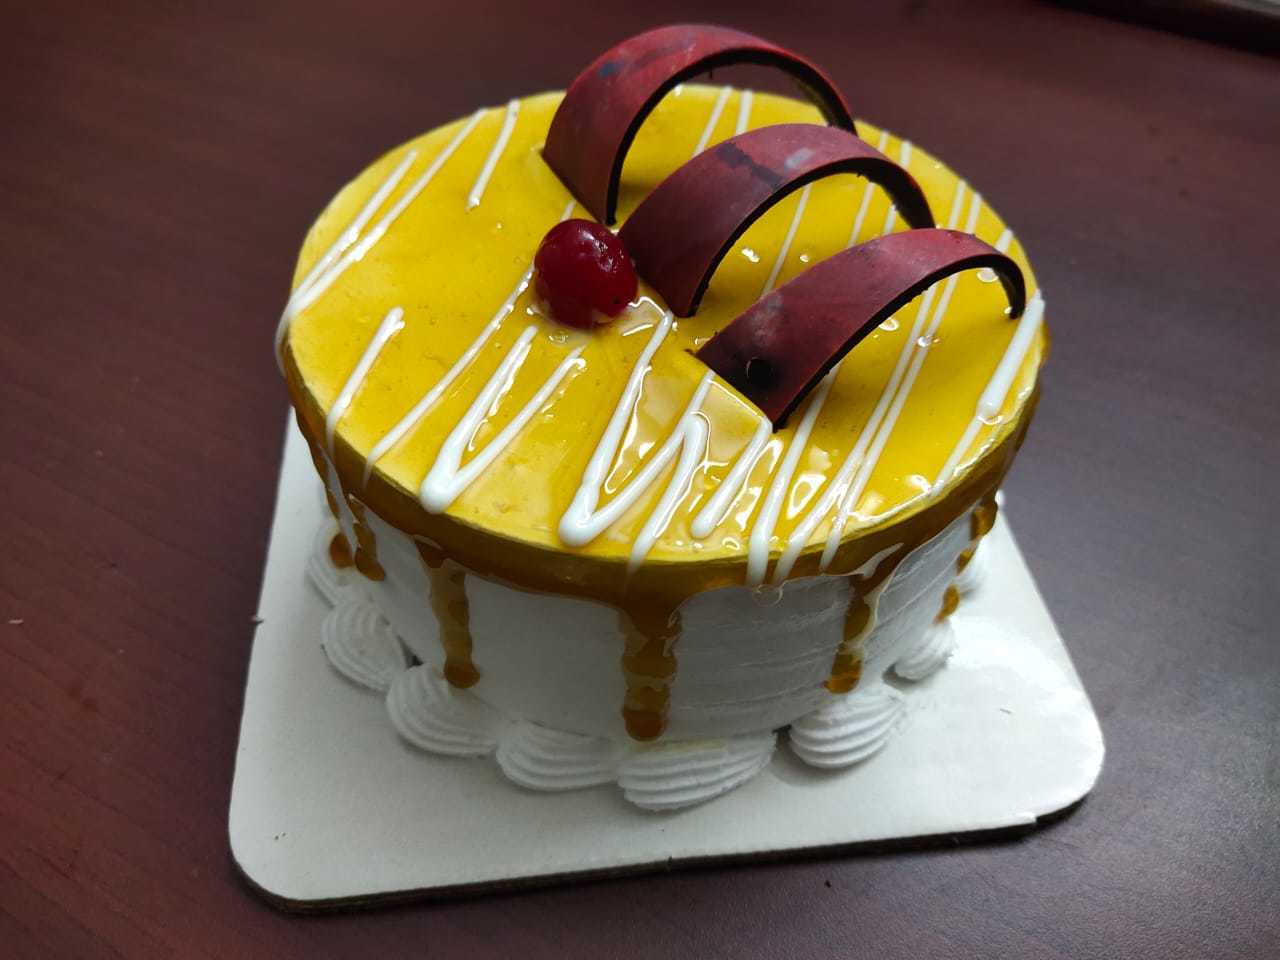 Send Red velvet cake 250 grams Online | Free Delivery | Gift Jaipur